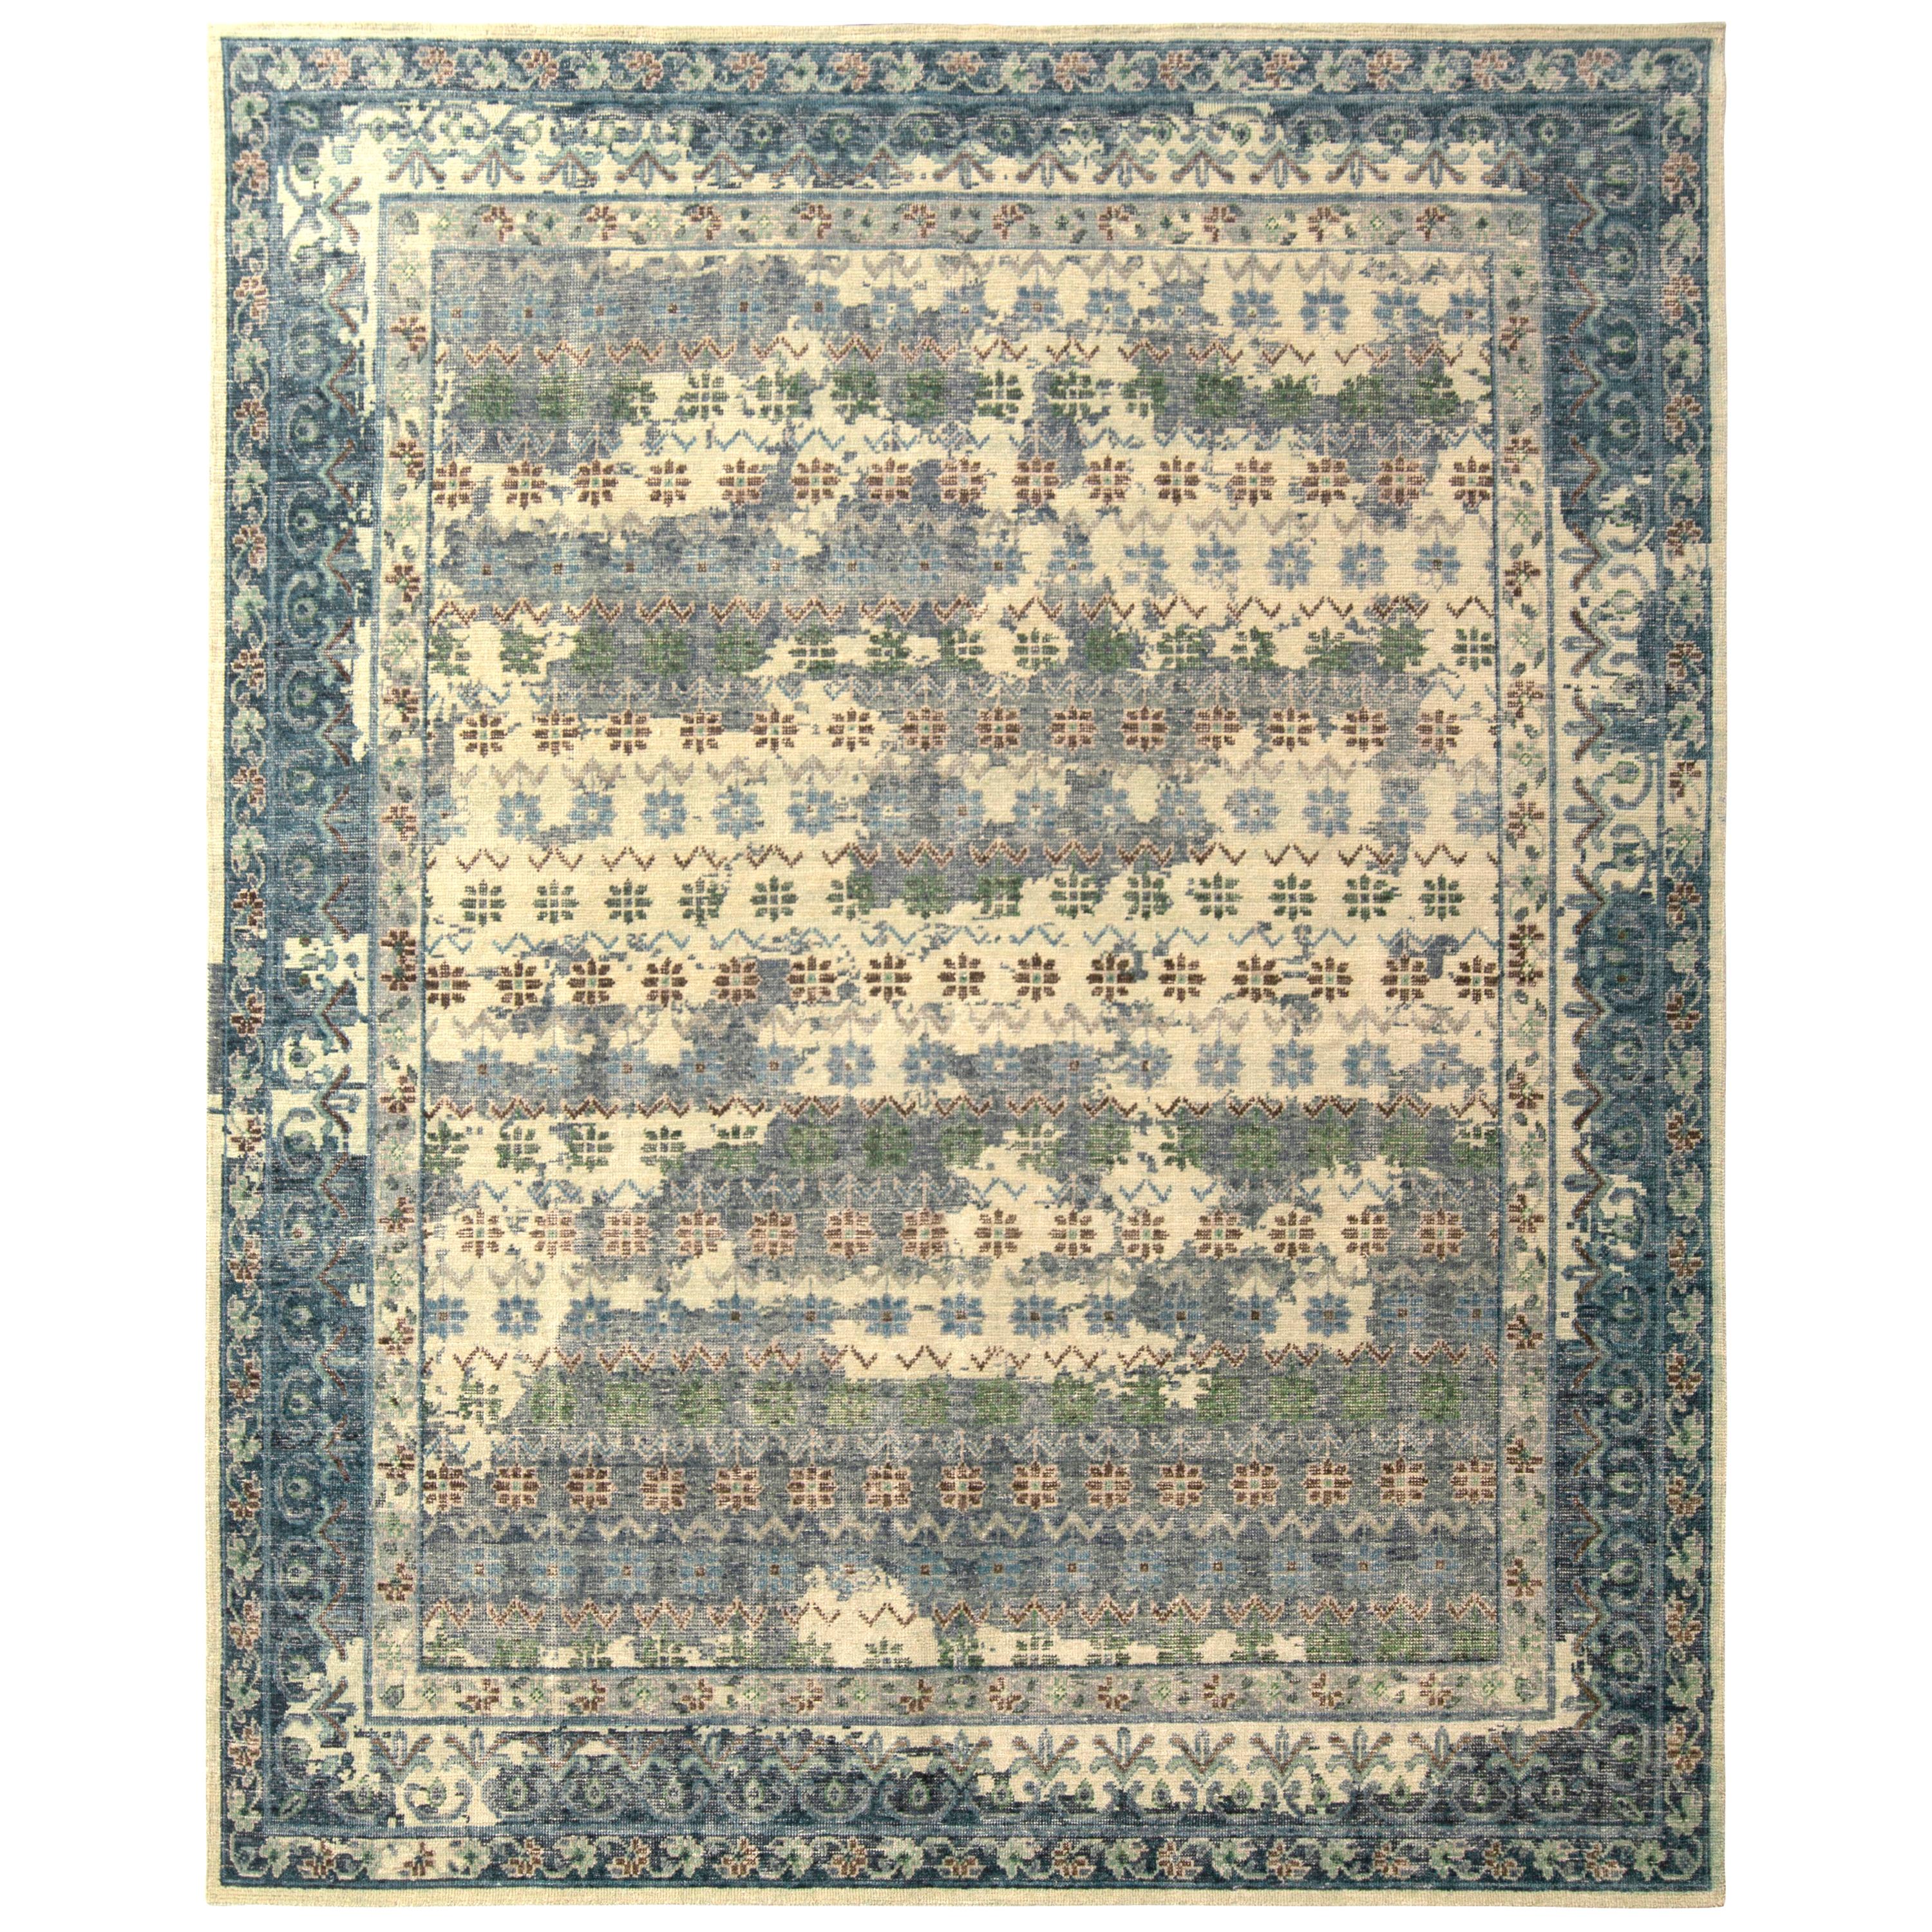 Dieser handgeknüpfte Classic-Teppich gehört zu den jüngsten Ergänzungen der Homage Collection von Rug & Kilim, einer ehrgeizigen Enzyklopädie von Epochen, die eine beispiellose Bandbreite internationaler Stile wieder aufgreift und neu erfindet,